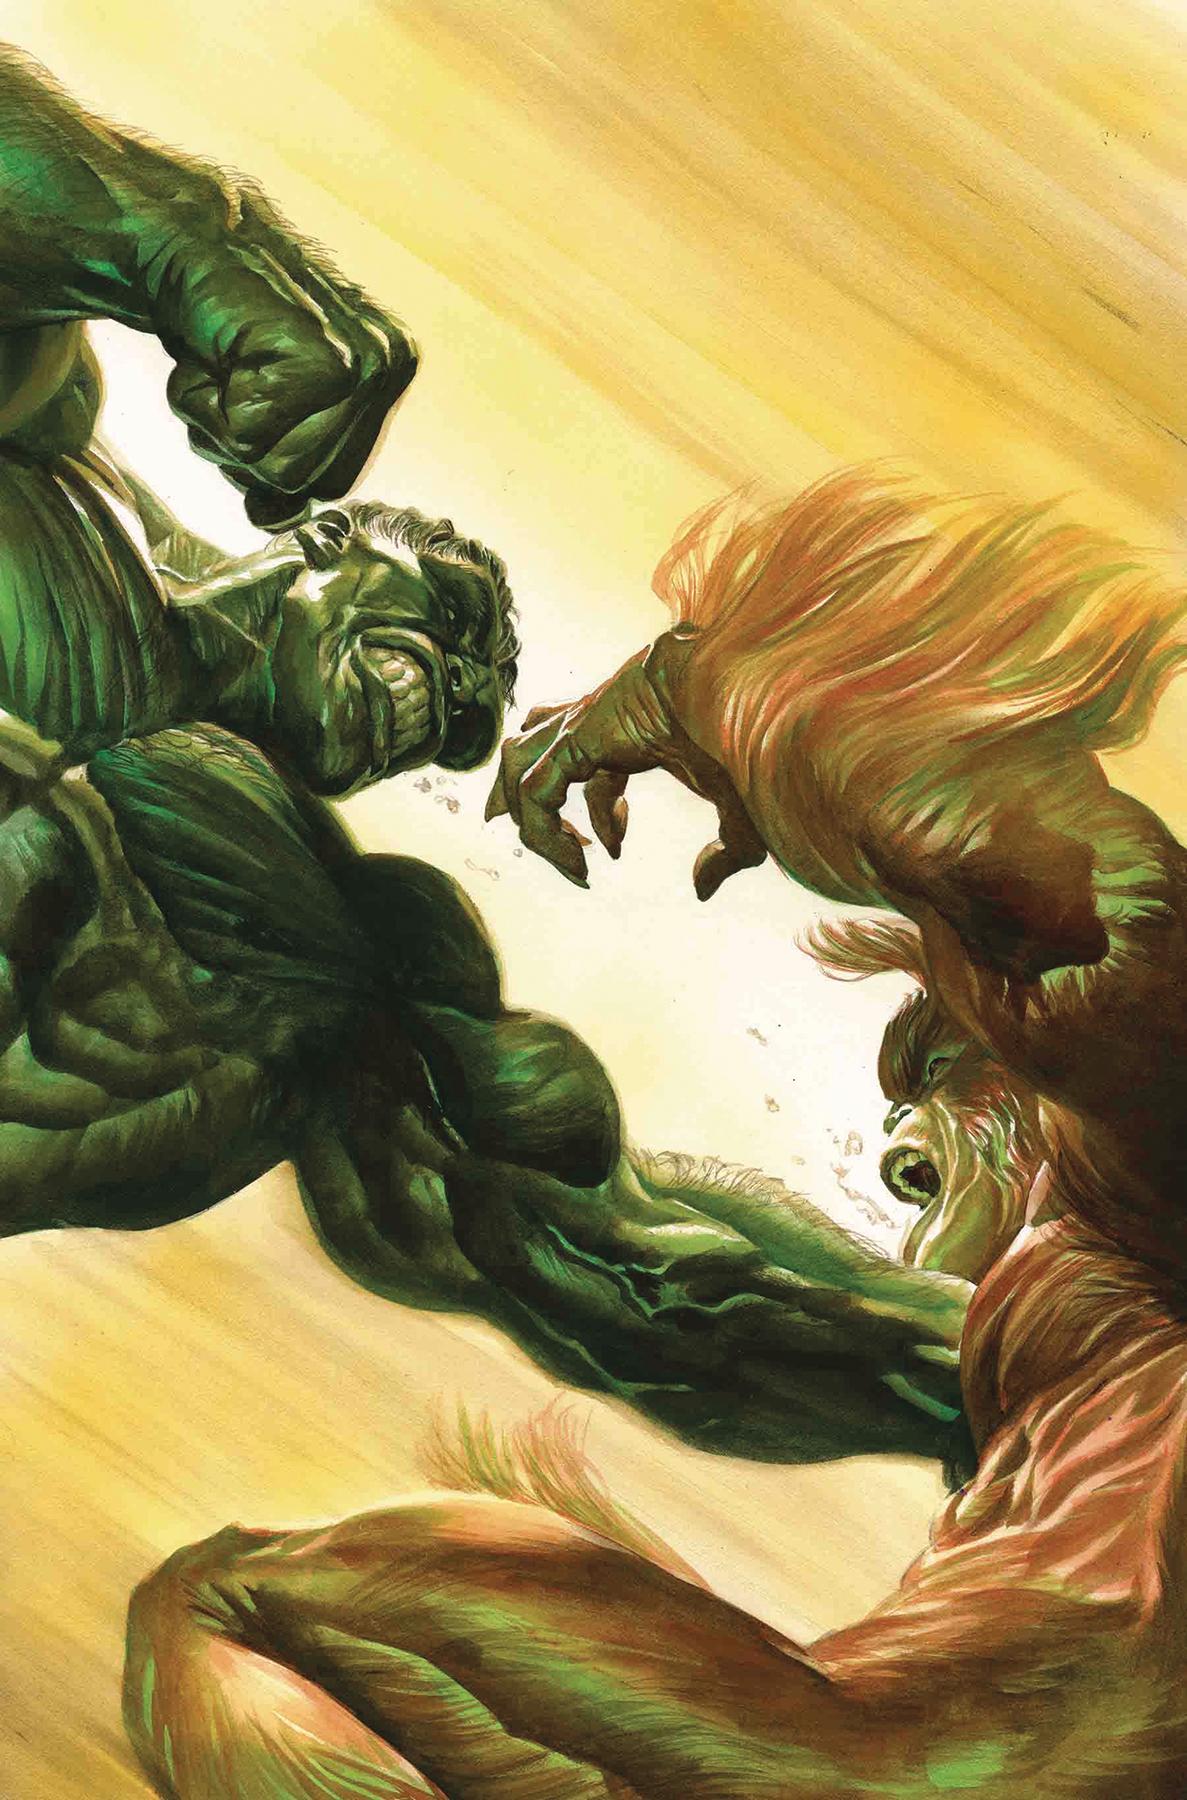 Immortal Hulk Vol. 1 #5